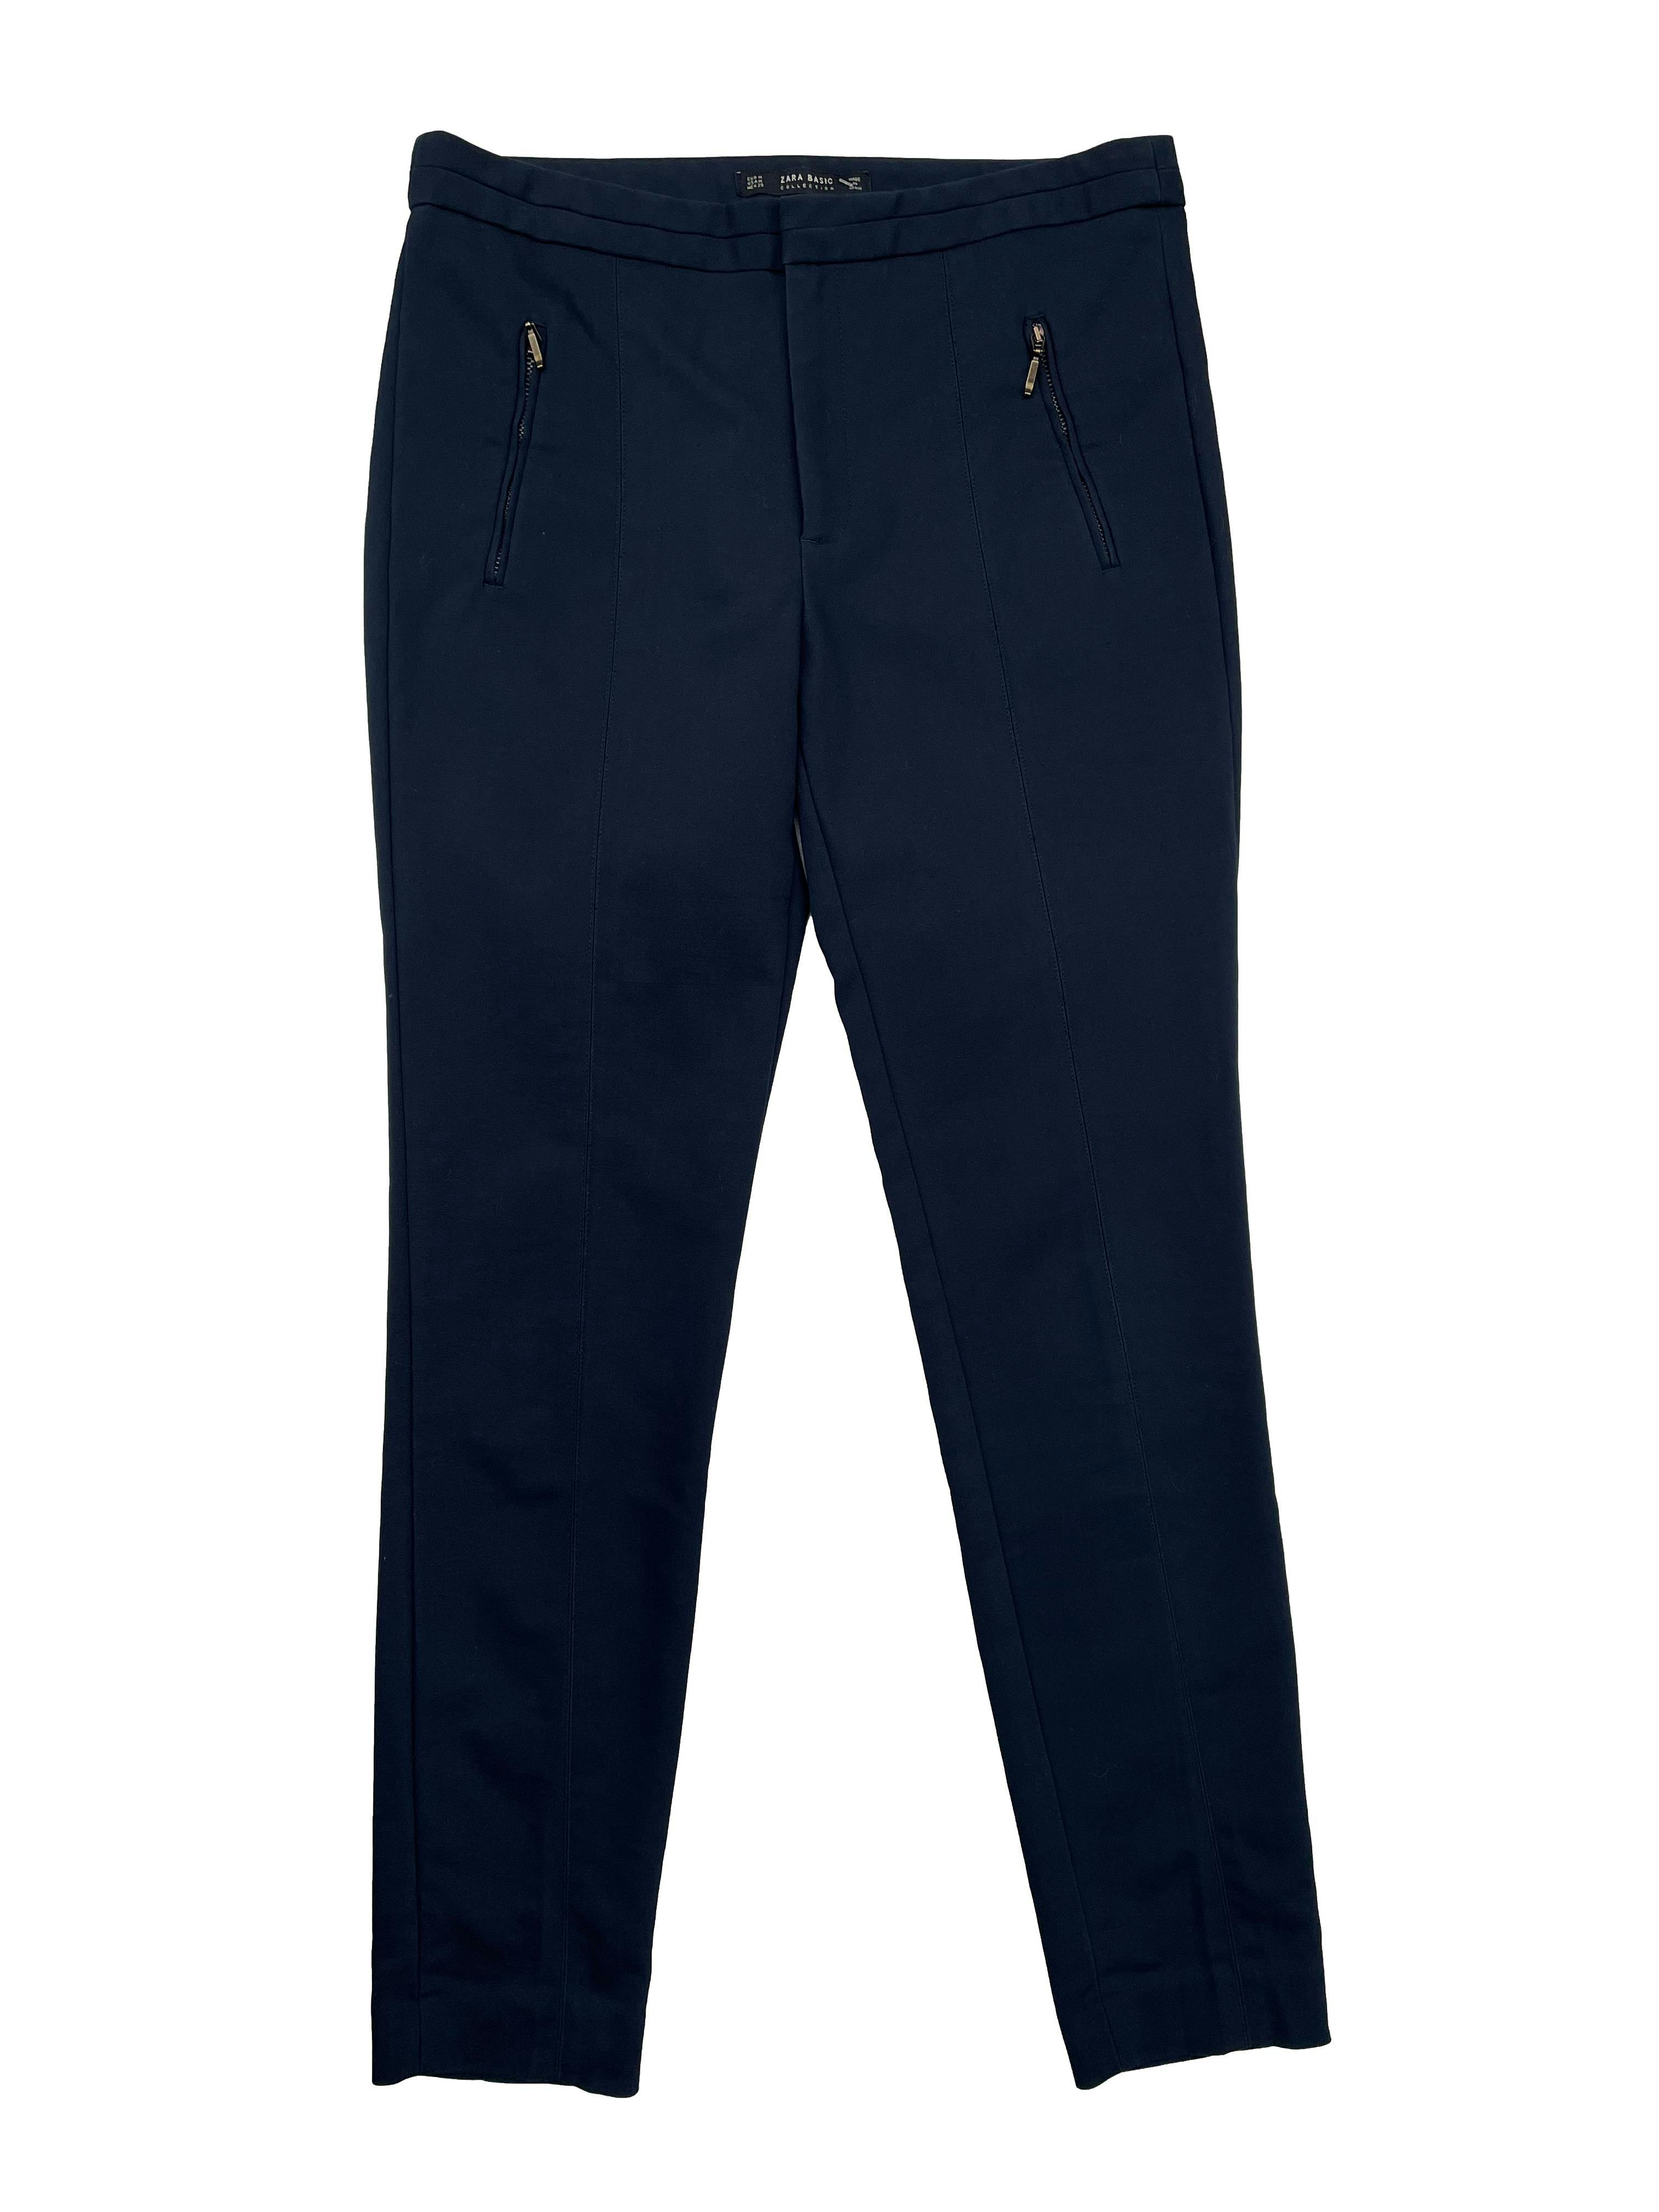 Pantalón formal Zara azul, corte slim, cierre y broche delanteros. Cintura 80cm Tiro 25cm Largo 95cm